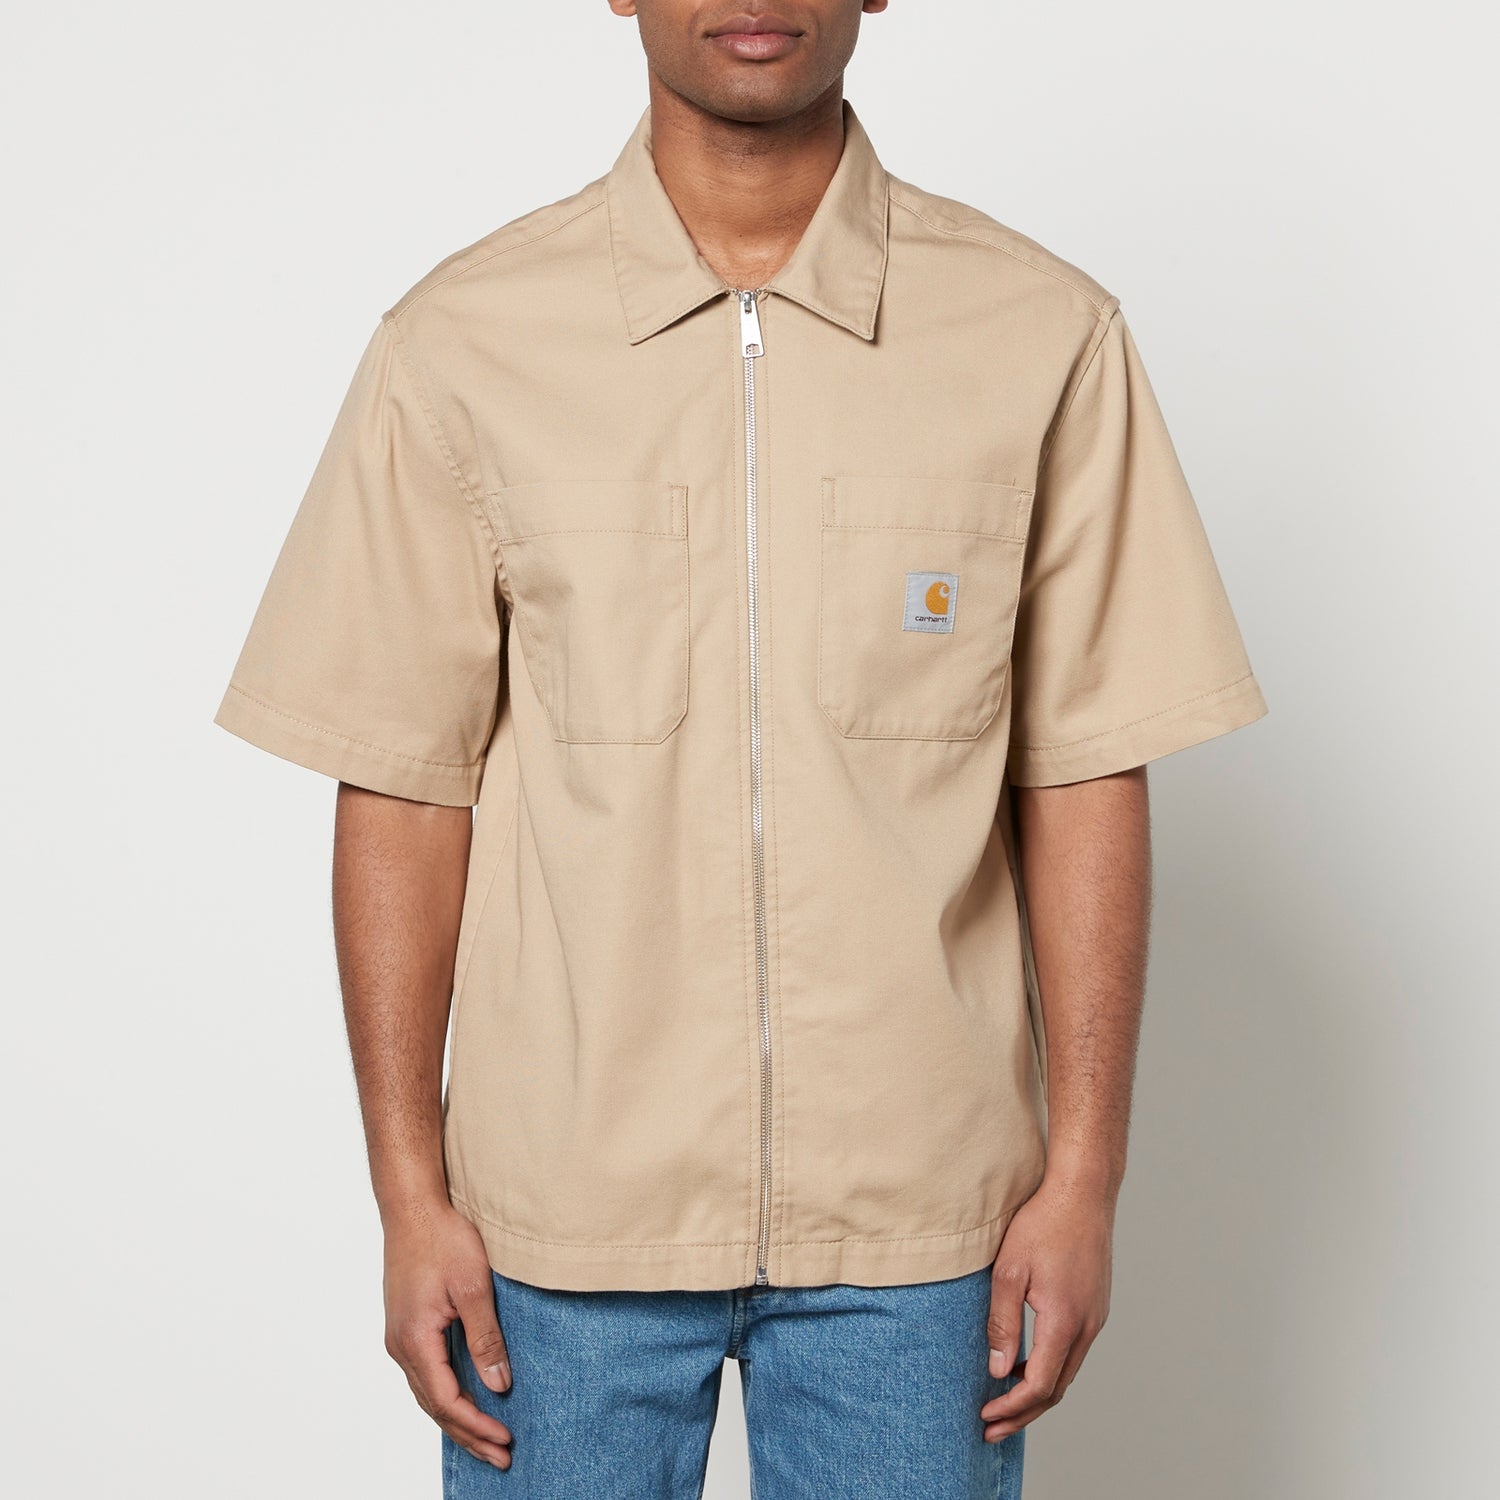 Carhartt WIP Sandler Cotton-Blend Twill Shirt - S